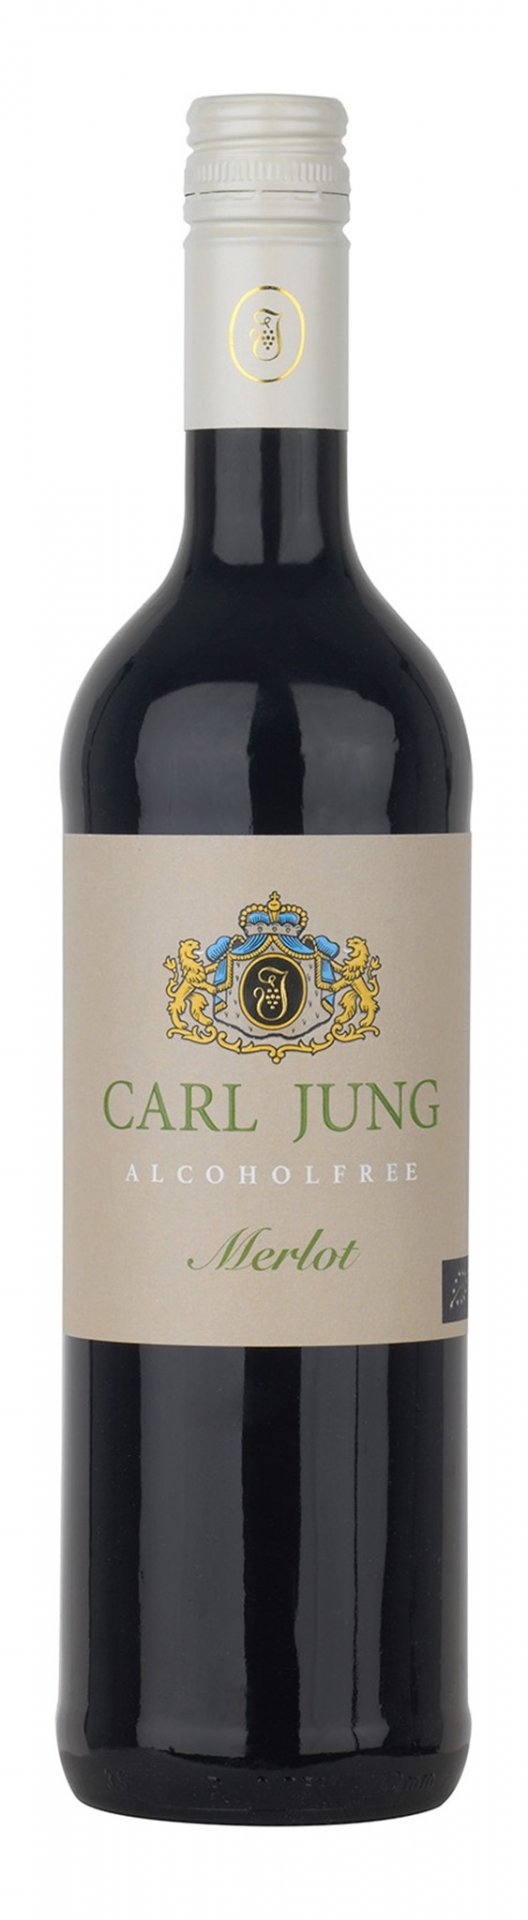 Carl Jung Merlot Bio & Vegan Alcohol-free